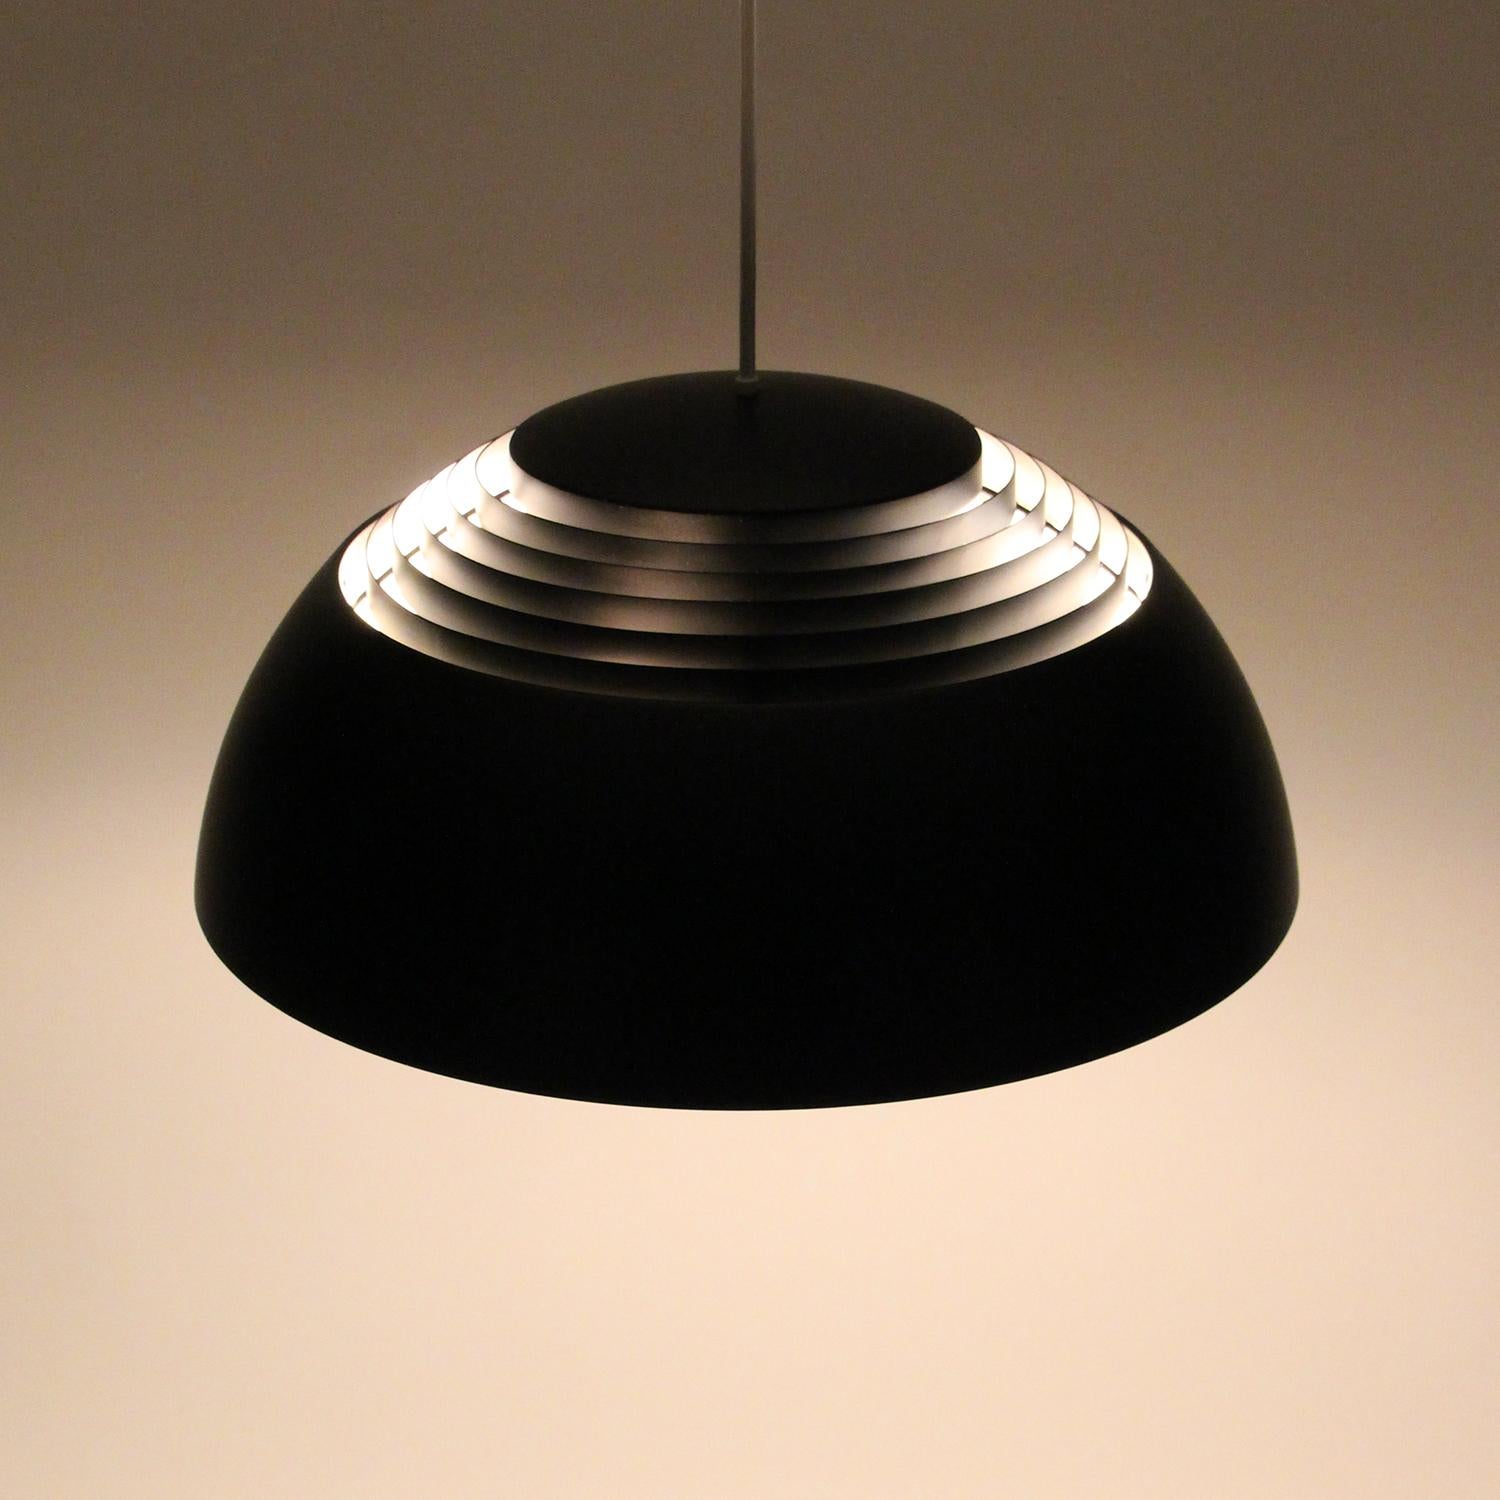 Mid-20th Century AJ ROYAL PENDANT black lamp by Arne Jacobsen 1957 Louis Poulsen